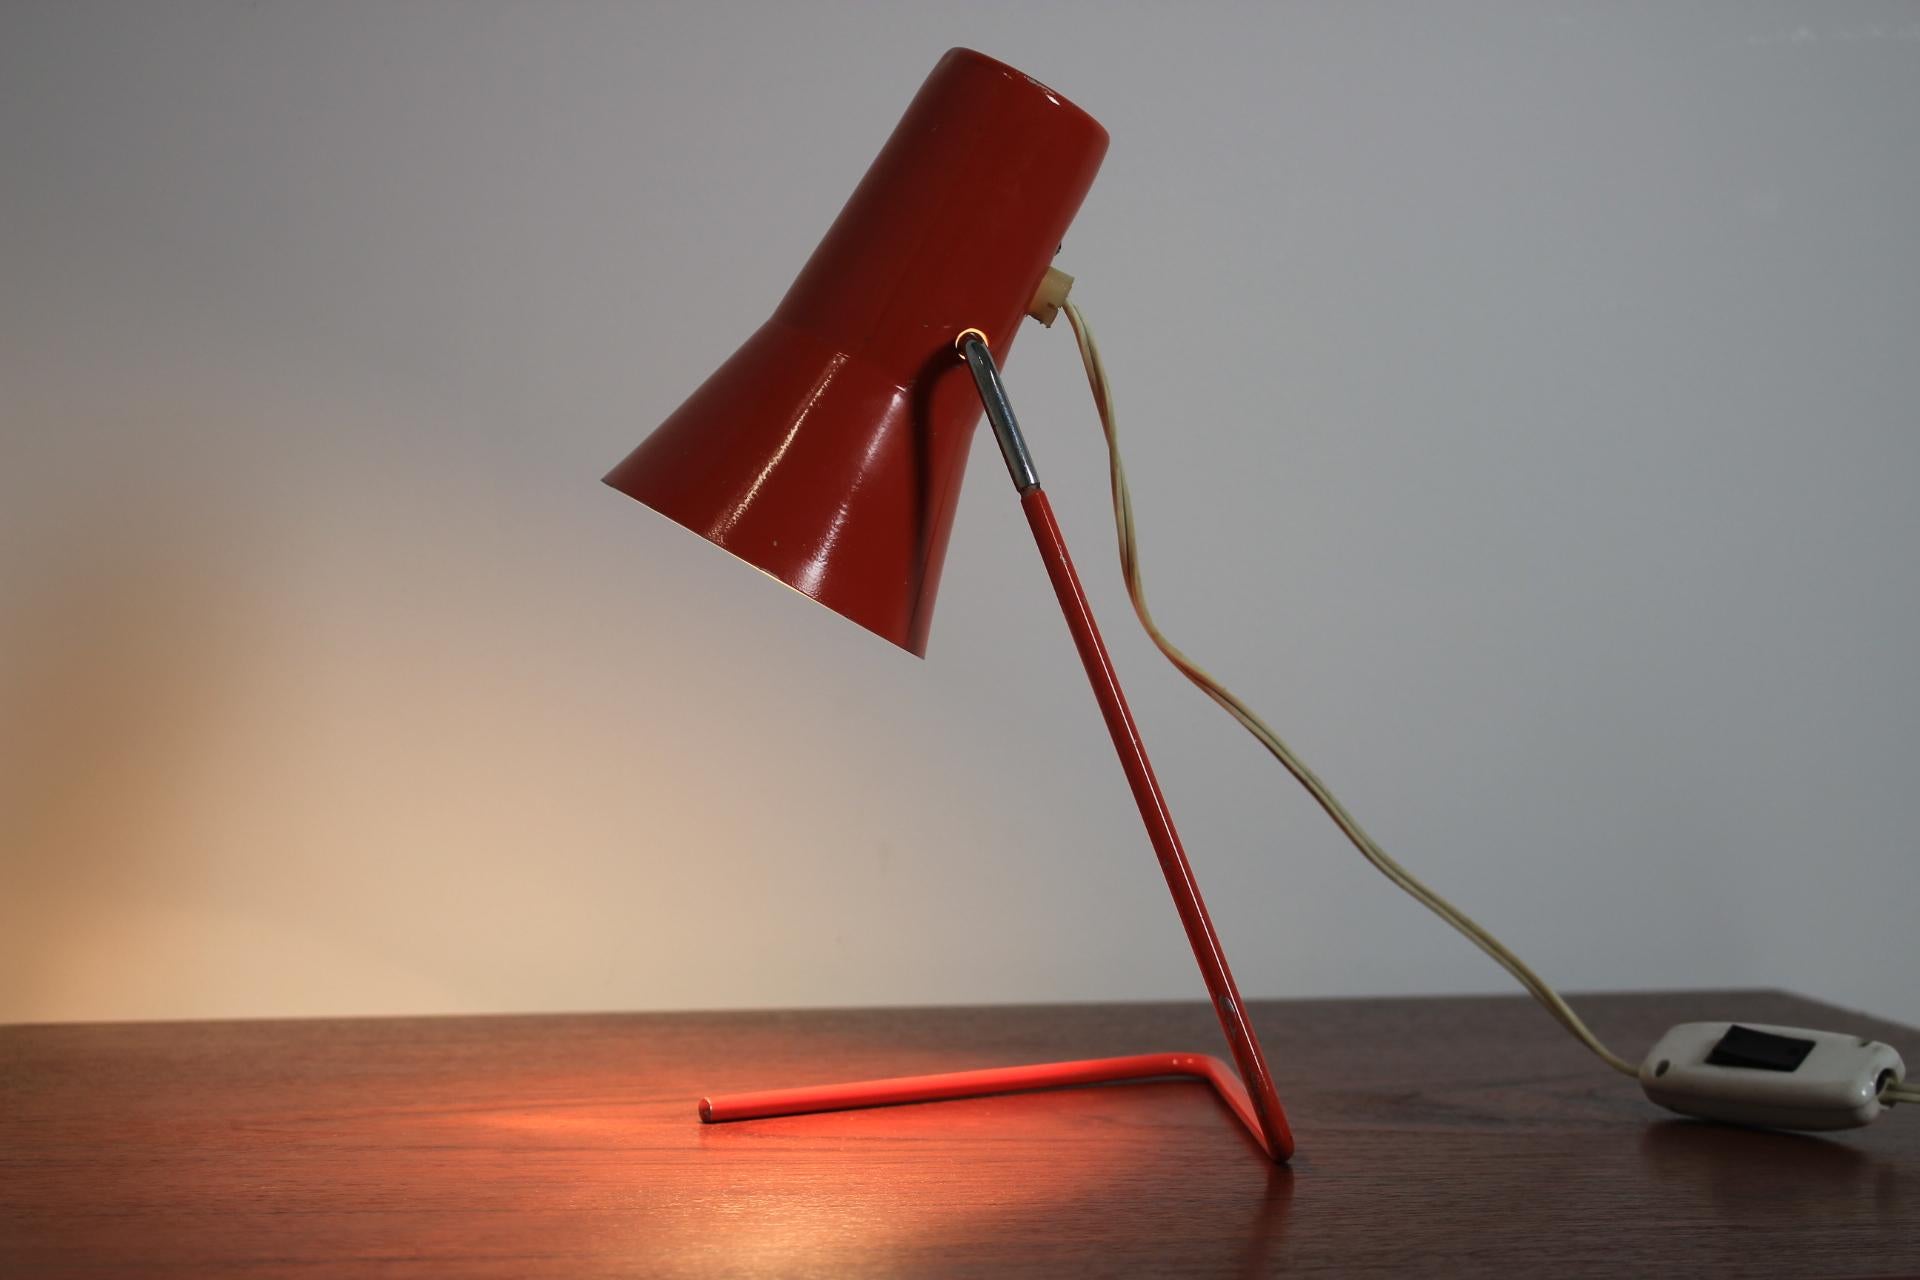 - Lampe de table iconique de la République tchèque
- Beau style d'éclairage
- Très pratique 
- Le nom du modèle est Talampa.